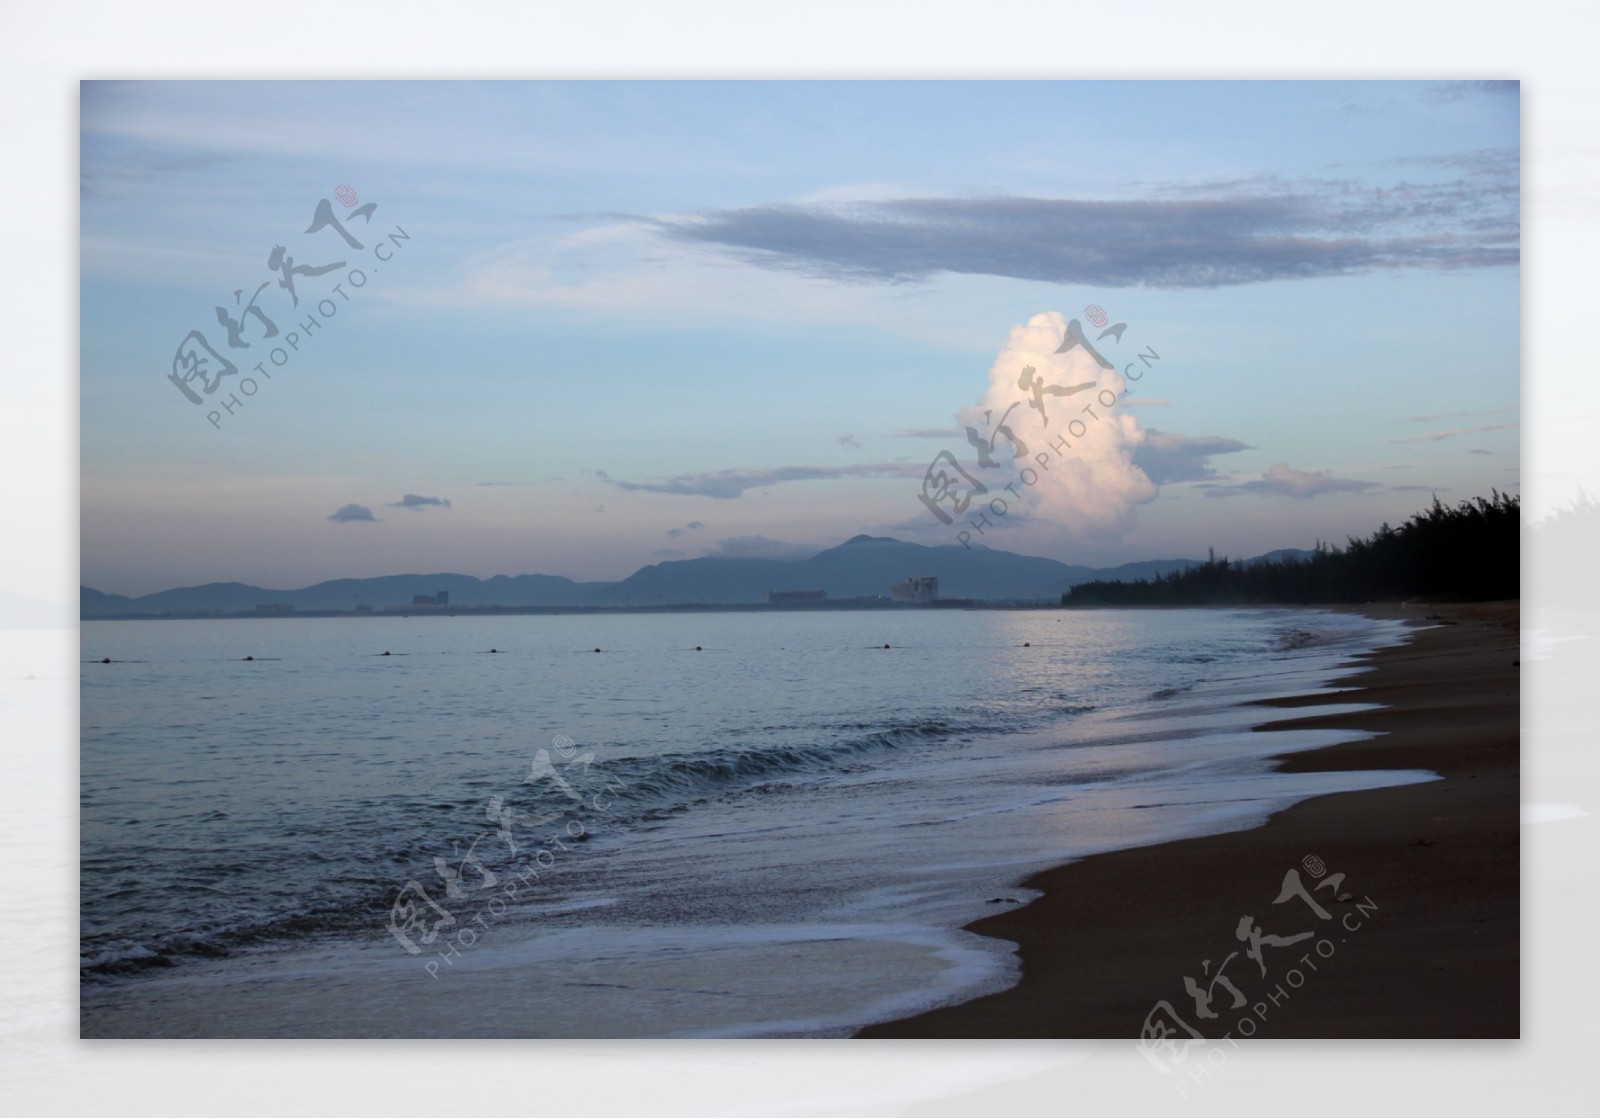 海棠湾清晨图片